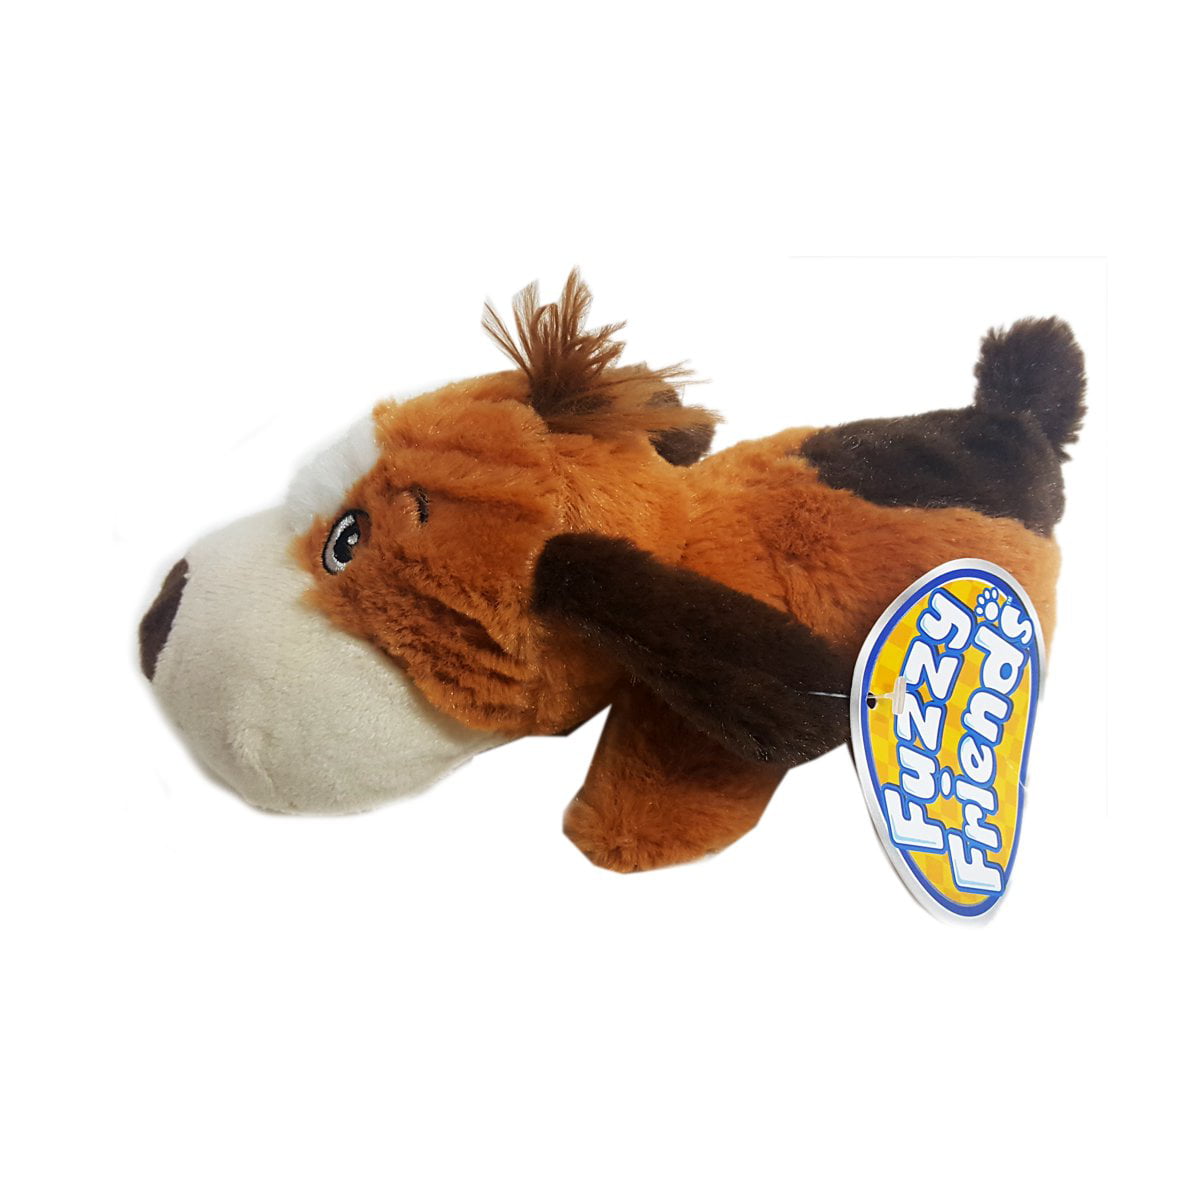 Fuzzy Friends Lovable Stuffed Tan Dog by Greenbrier International 